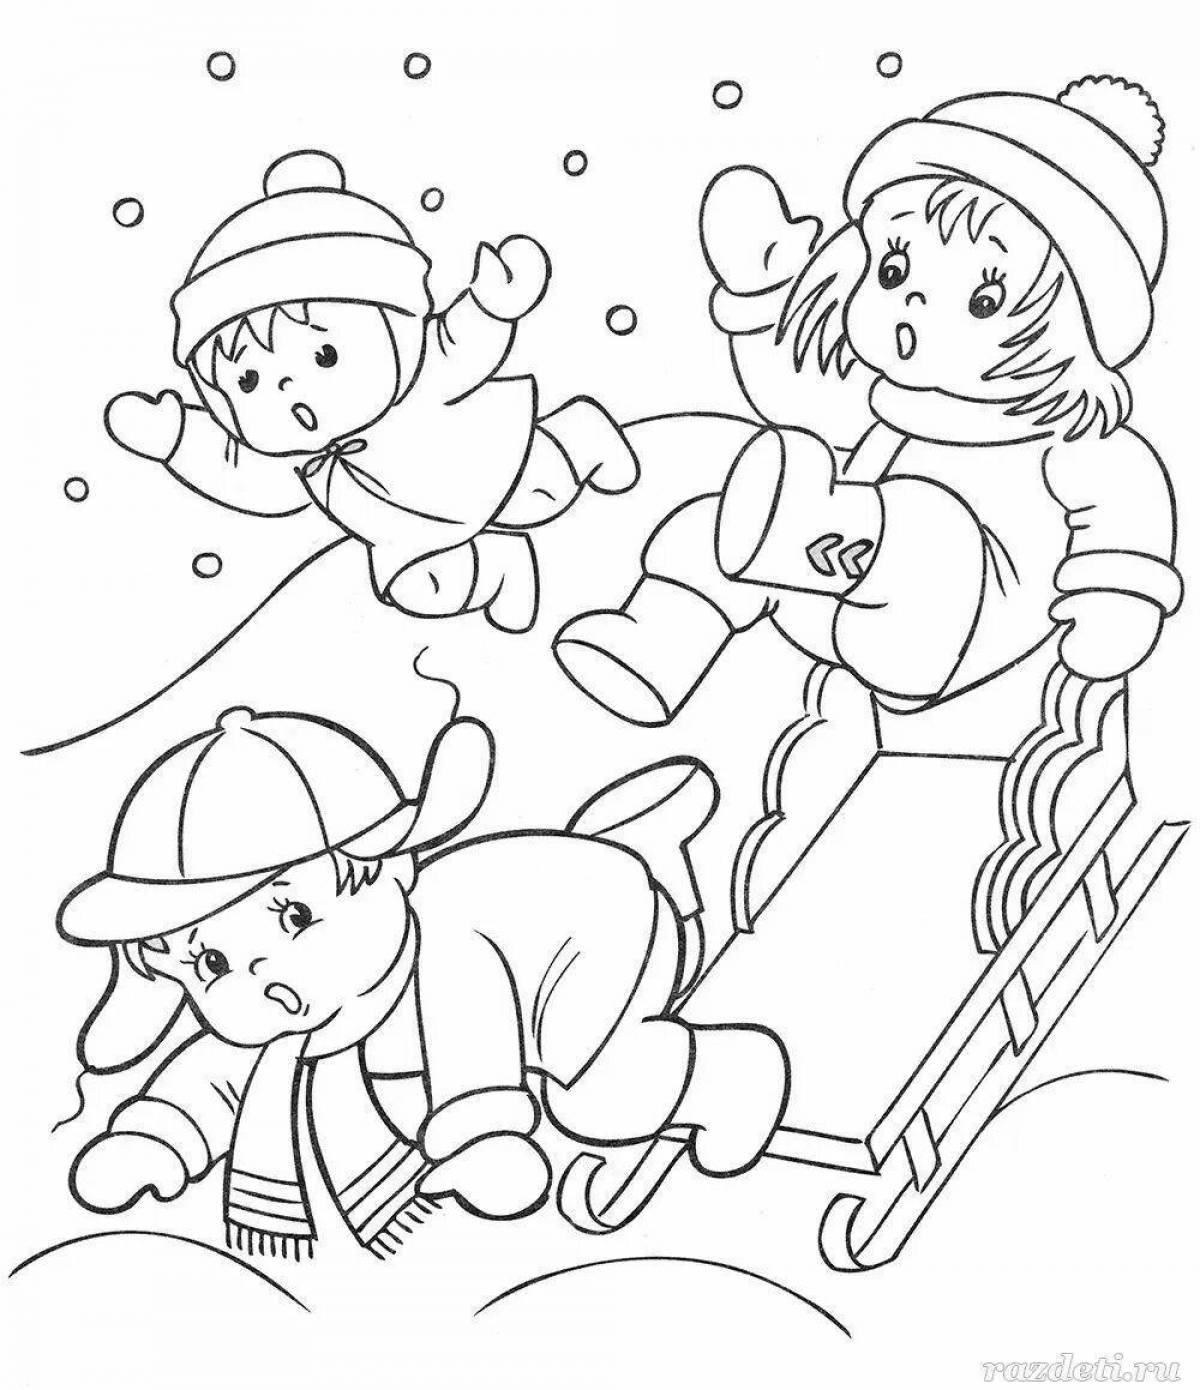 Яркая раскраска зимние забавы для детей 3-4 лет в детском саду